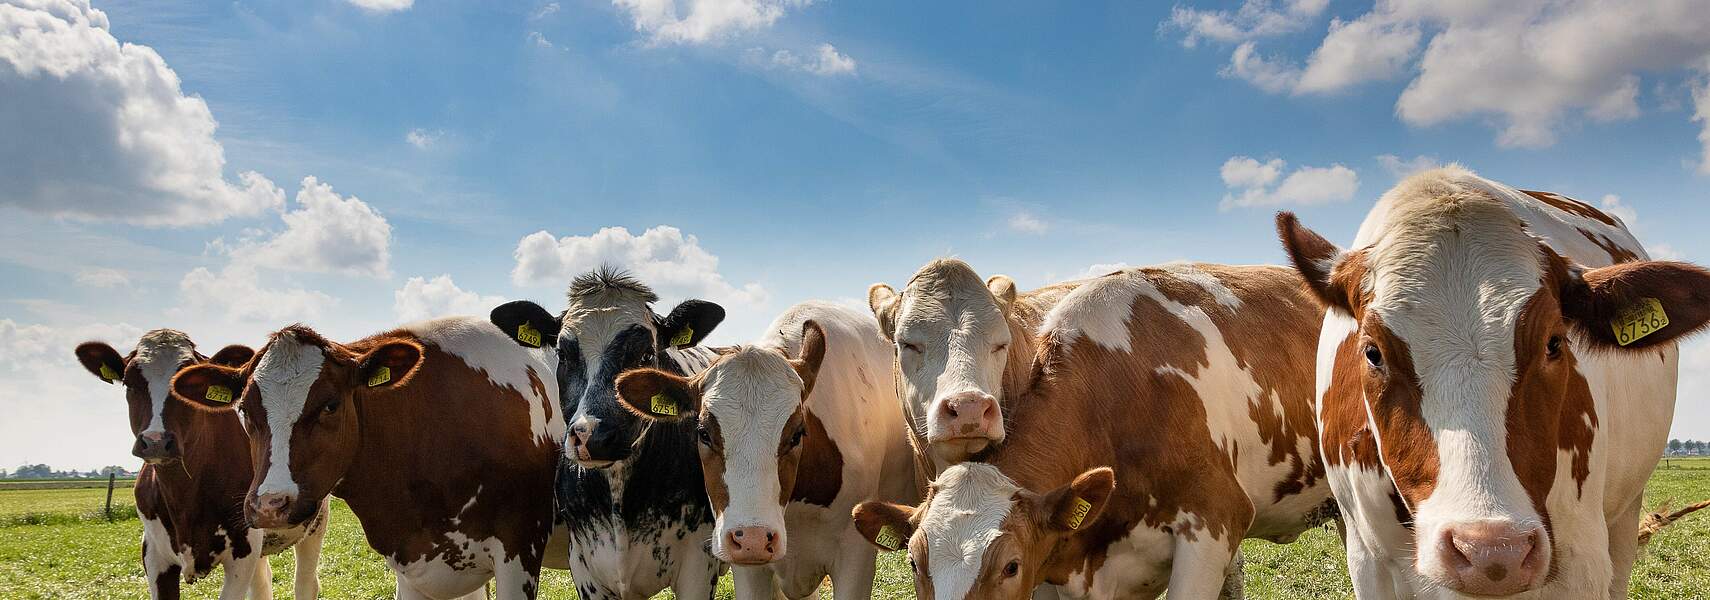 Methanemissionen in der Rinderhaltung